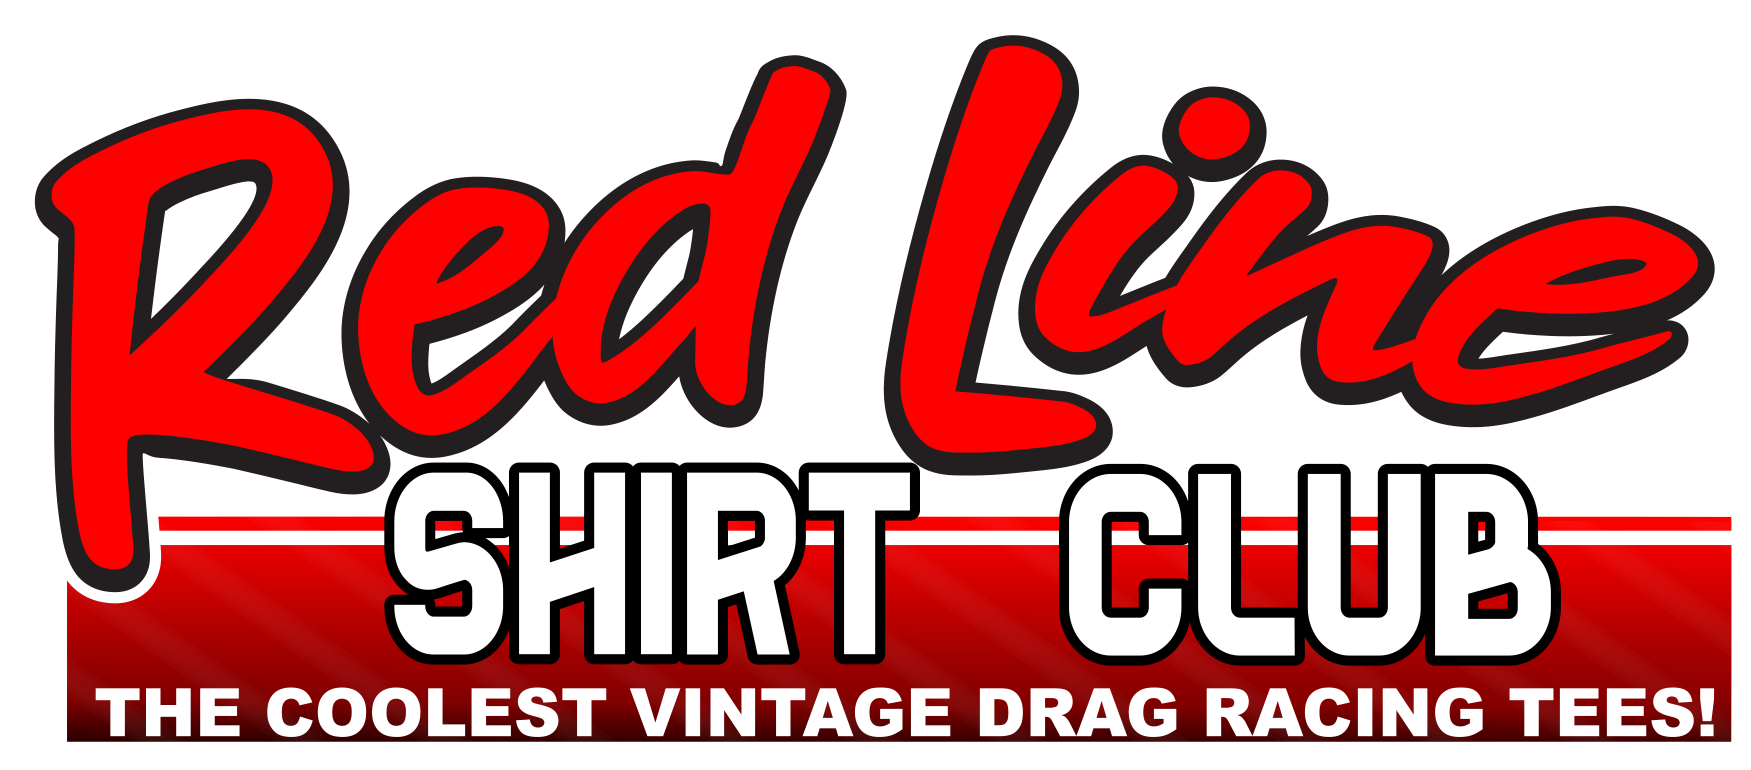 red line shirt club